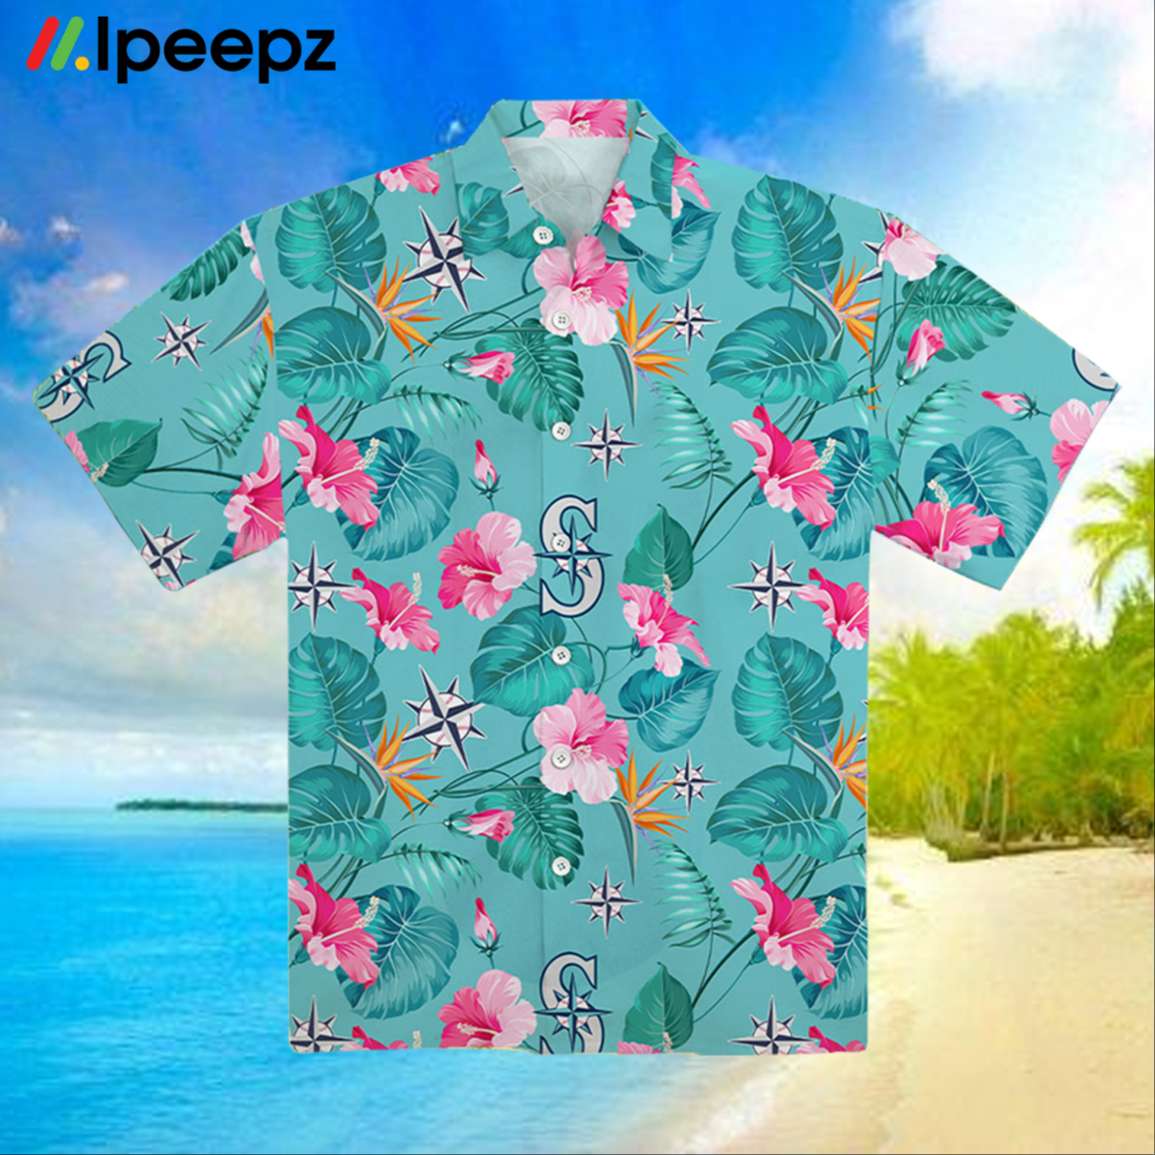 mariners hawaiian shirt night